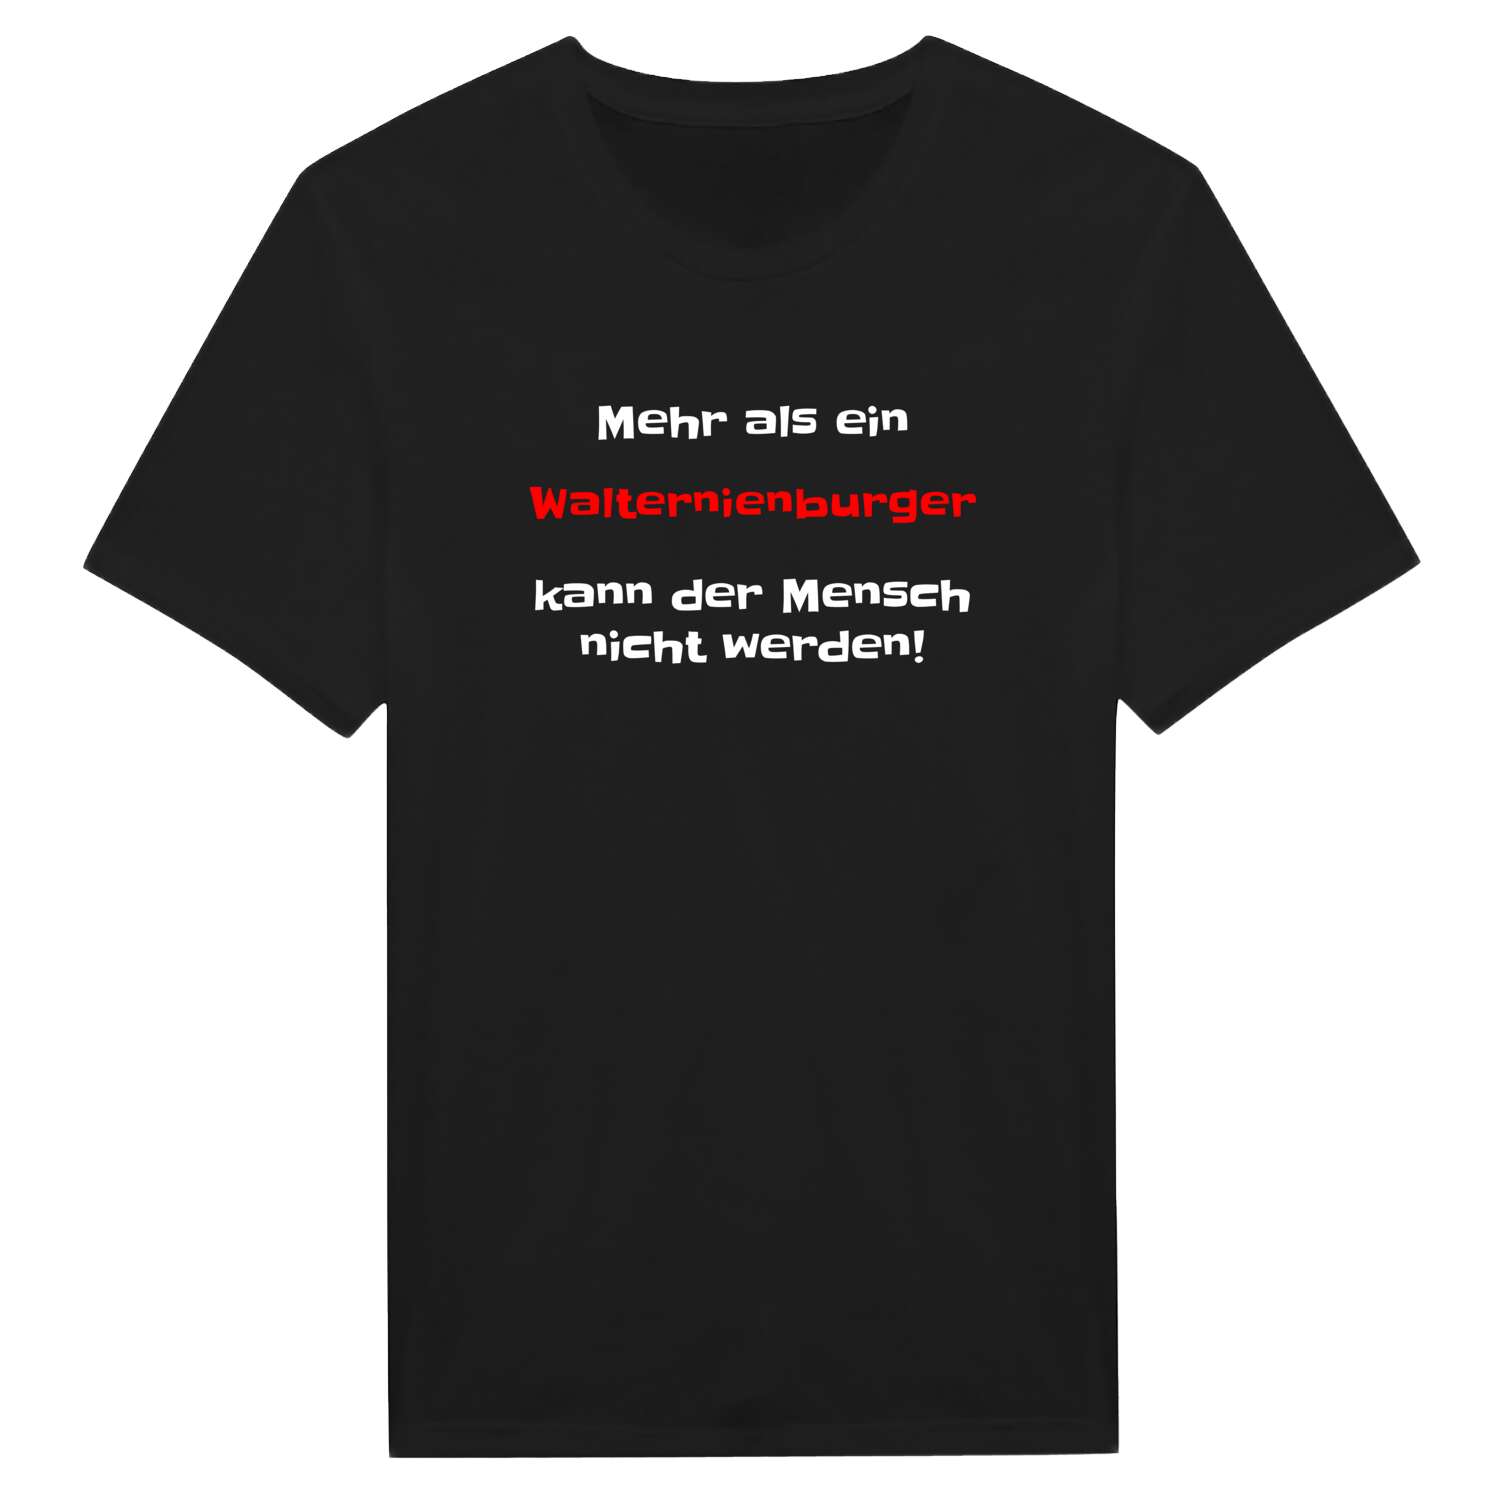 Walternienburg T-Shirt »Mehr als ein«